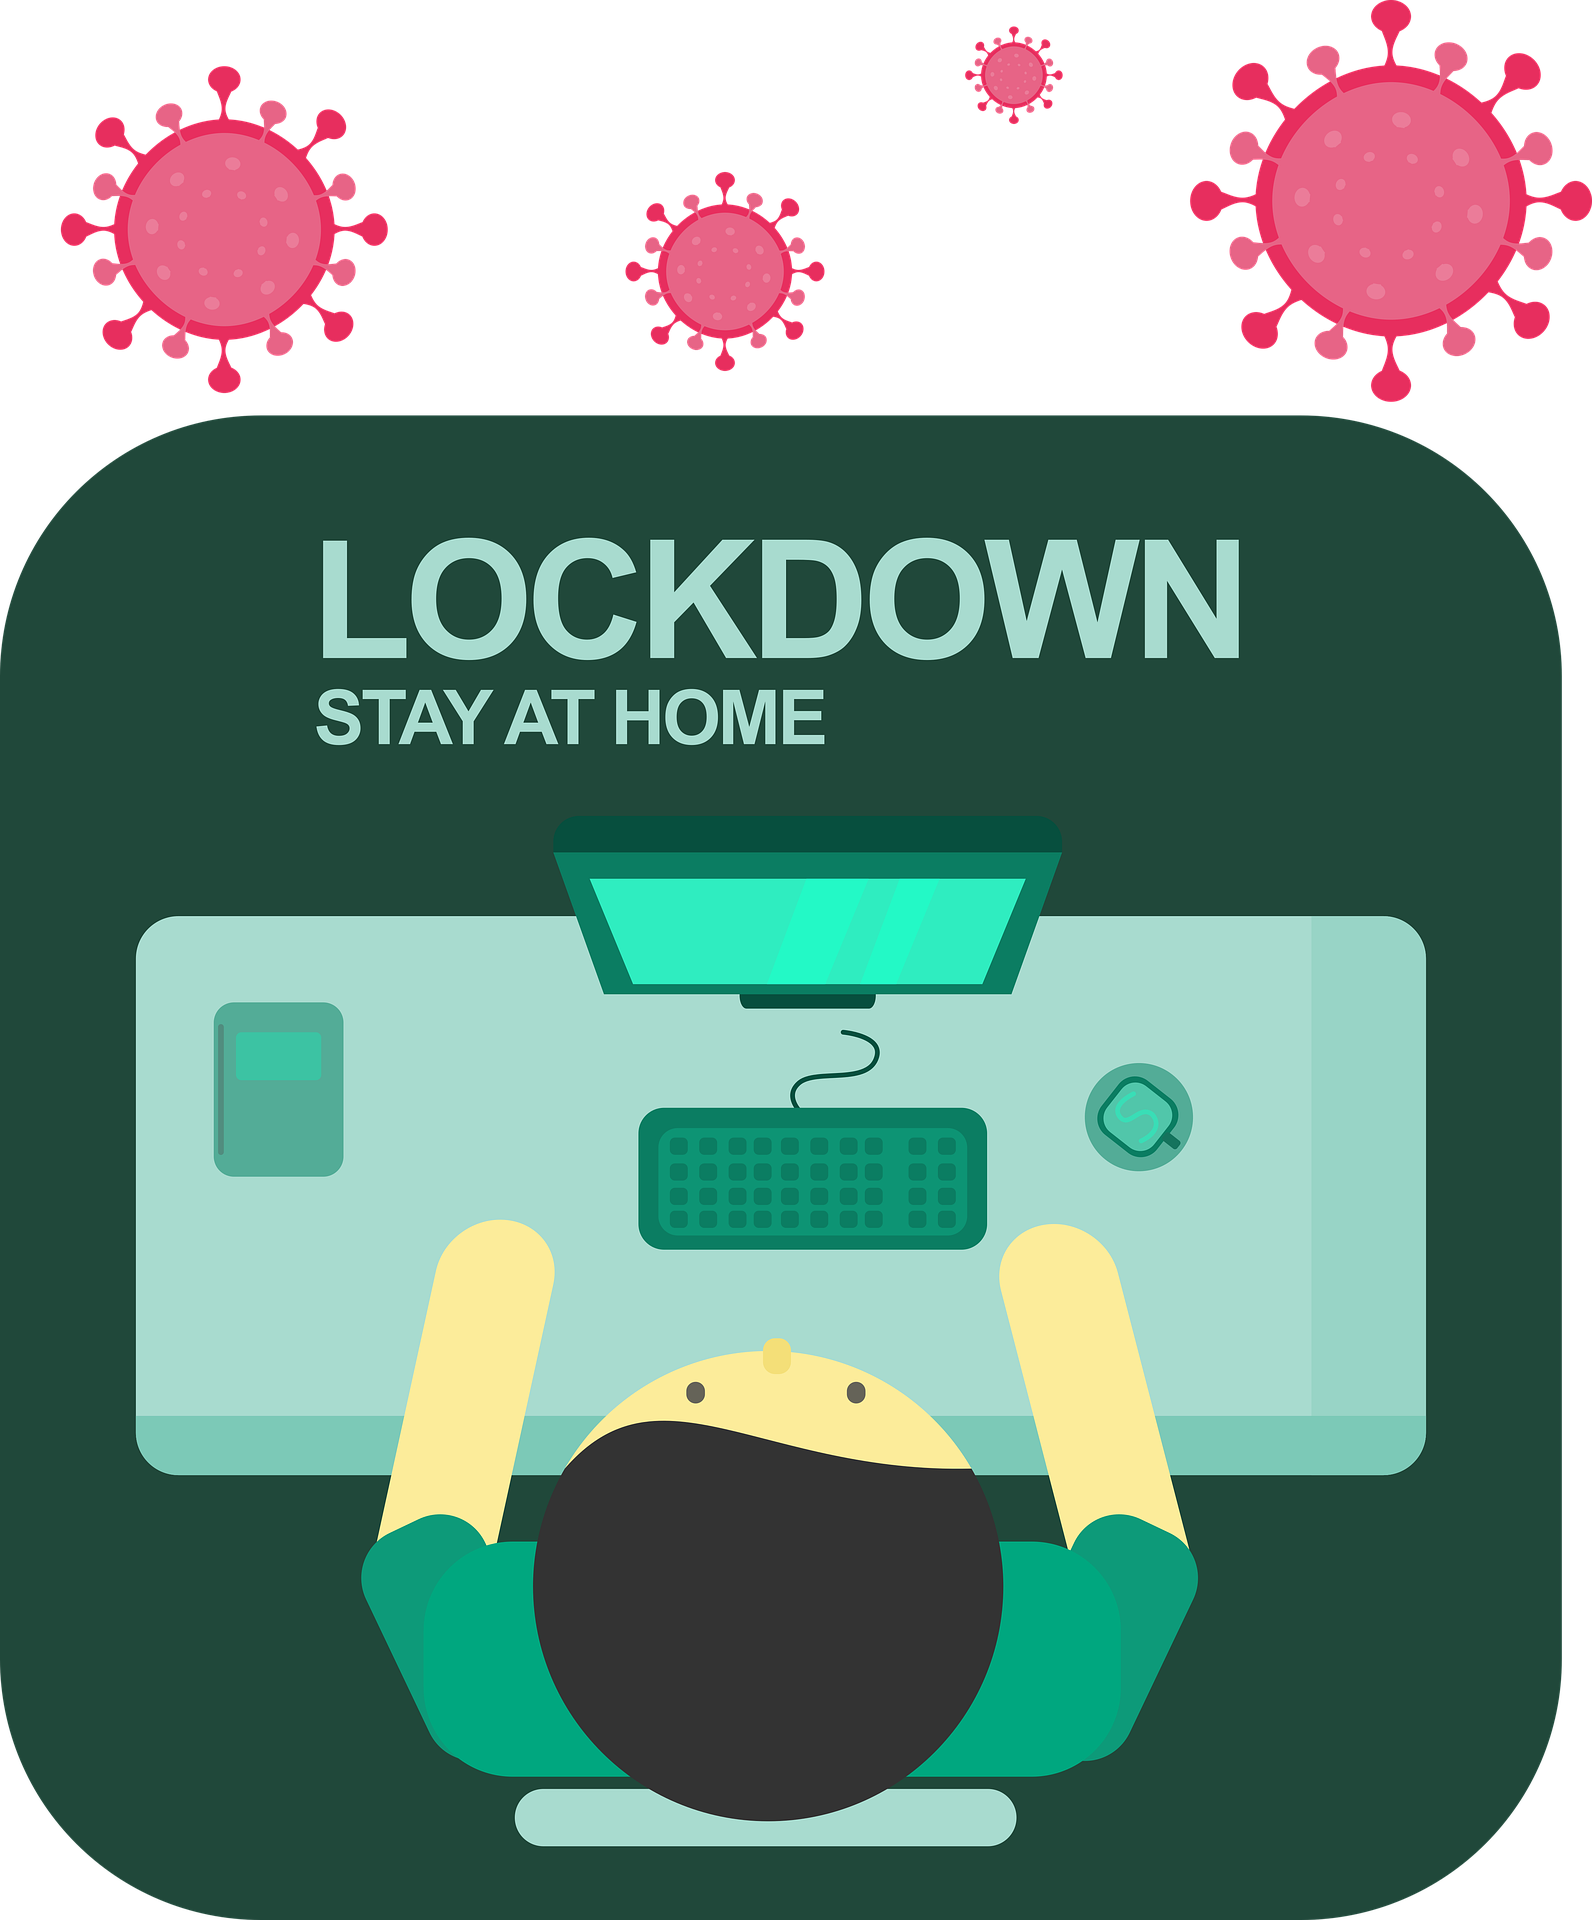 How to make money during coronavirus lockdown